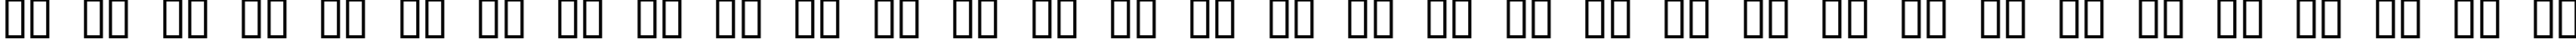 Пример написания русского алфавита шрифтом Domino Regular